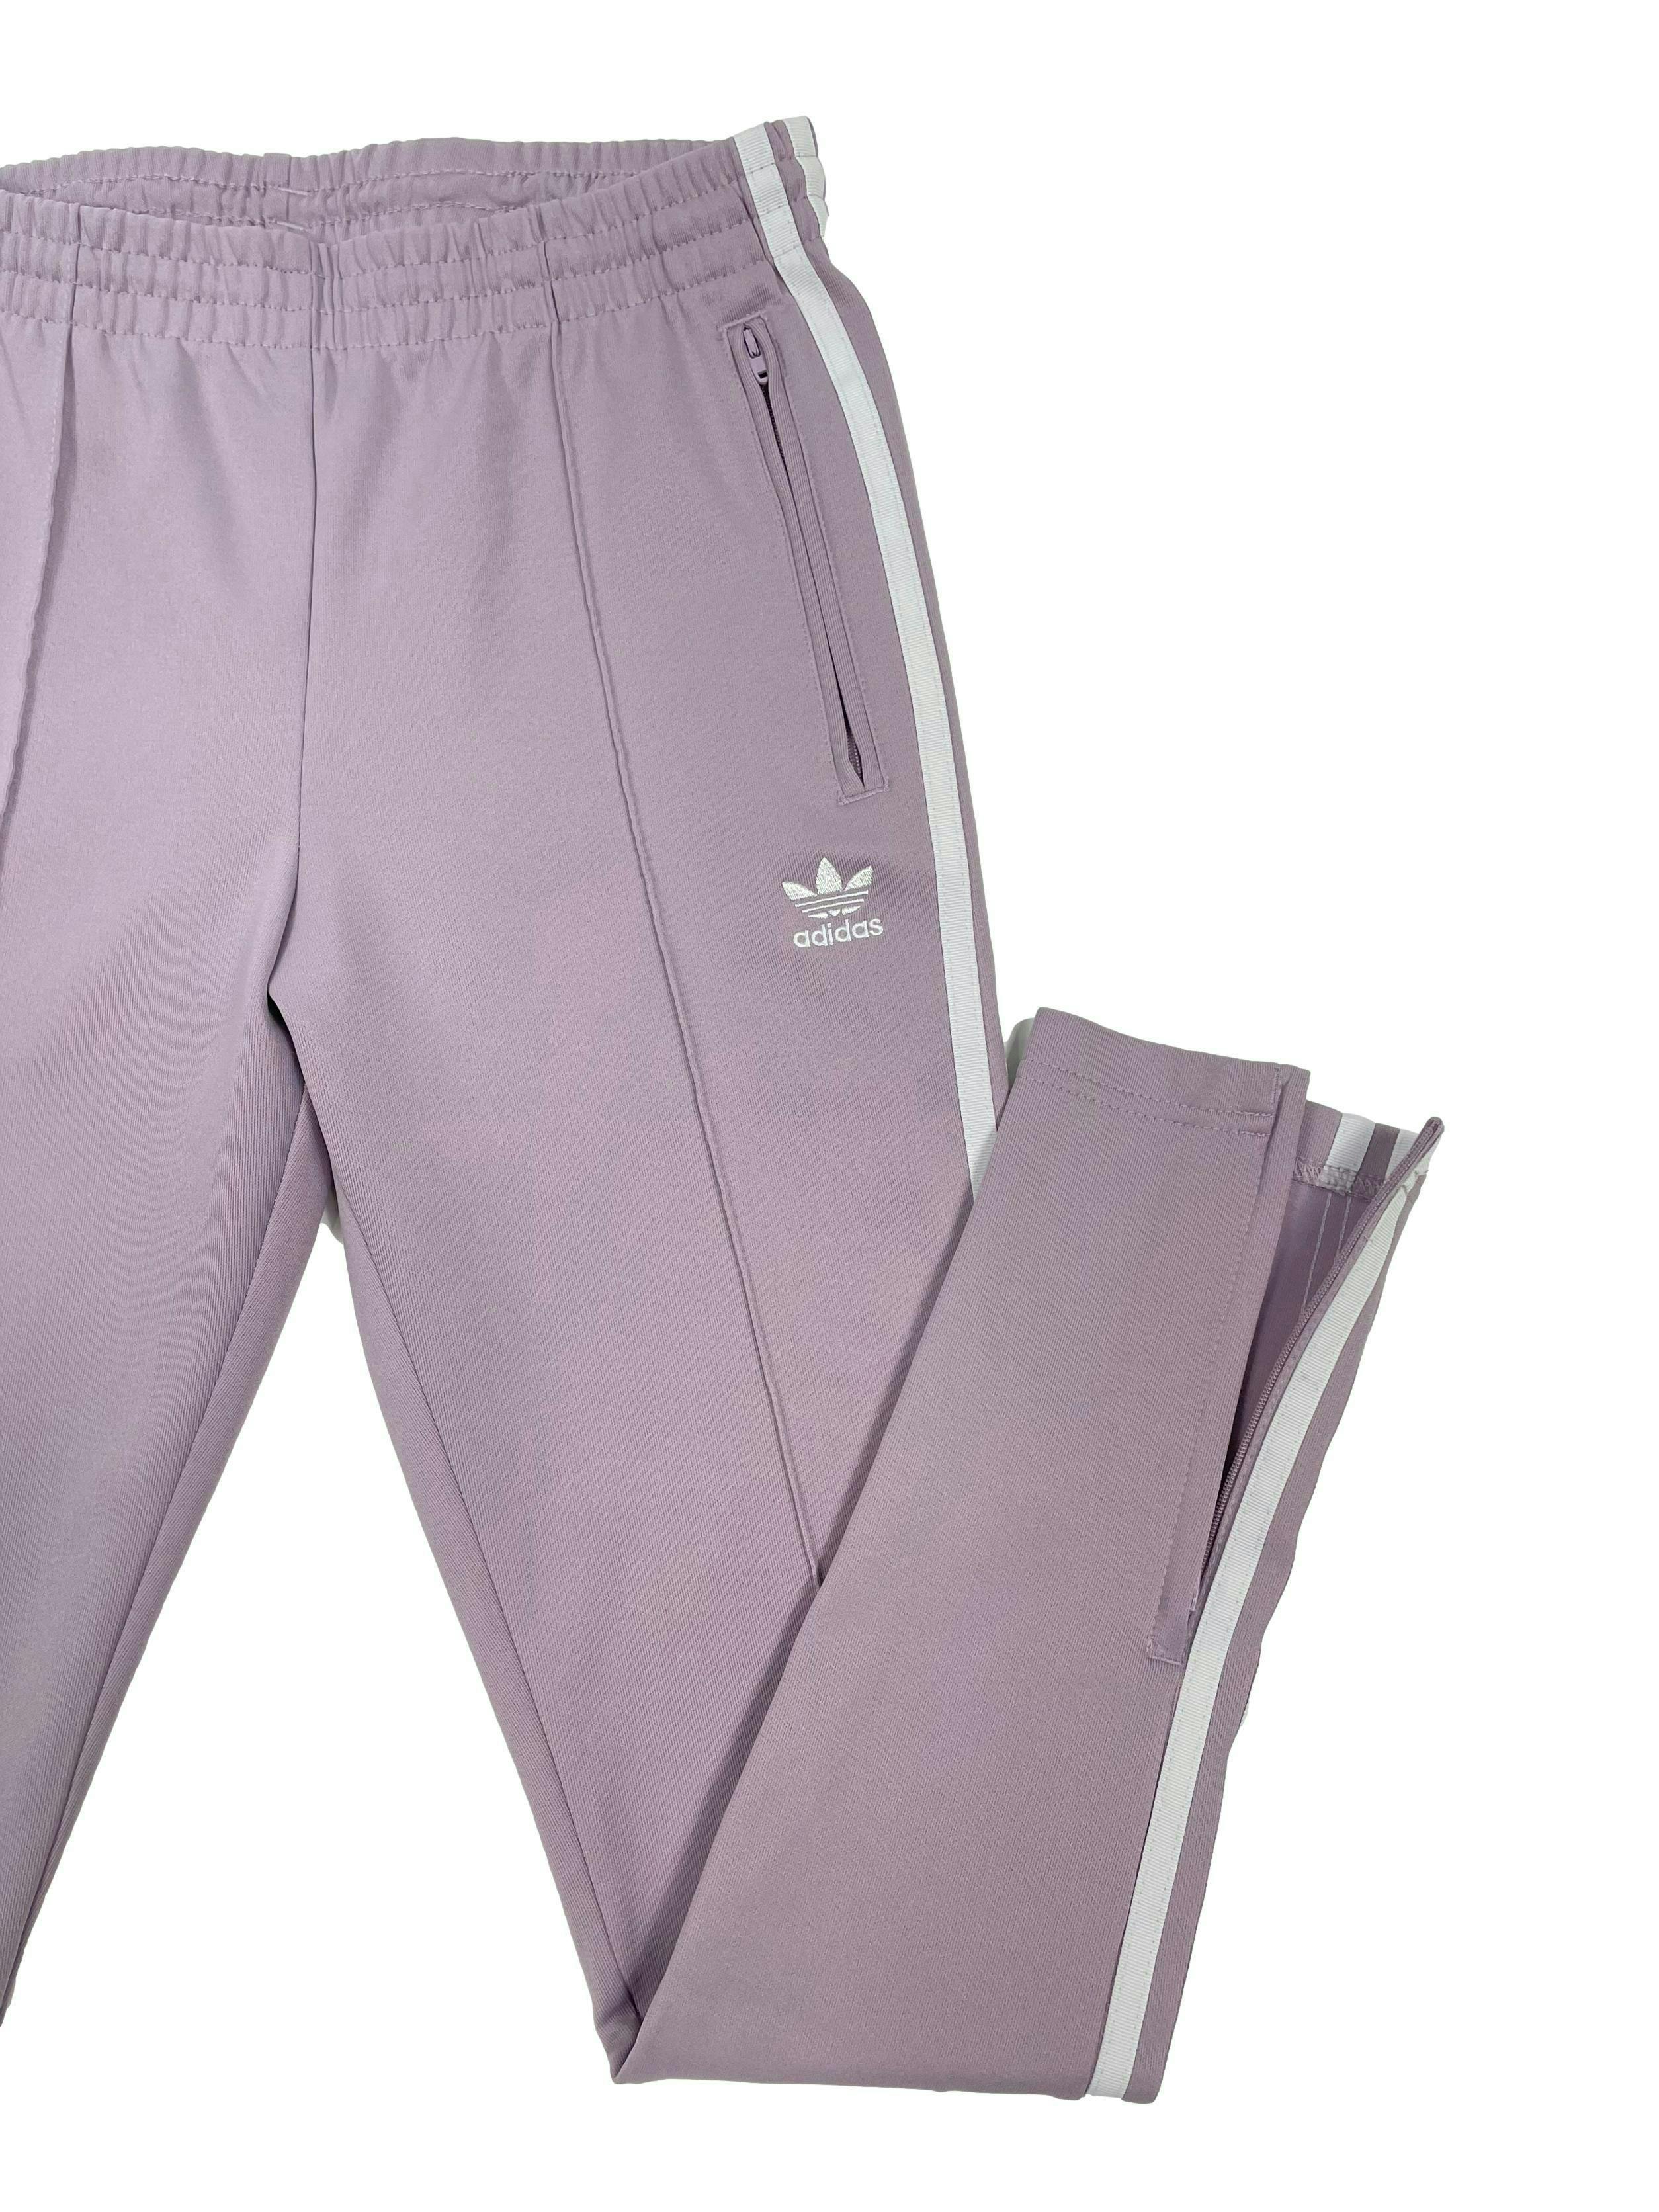 Buzo Adidas lila con líneas blancas laterales, bolsillos y bastas con cierre, pretina elástica y pasador, corte recto. Cintura 68cm Largo 91cm.